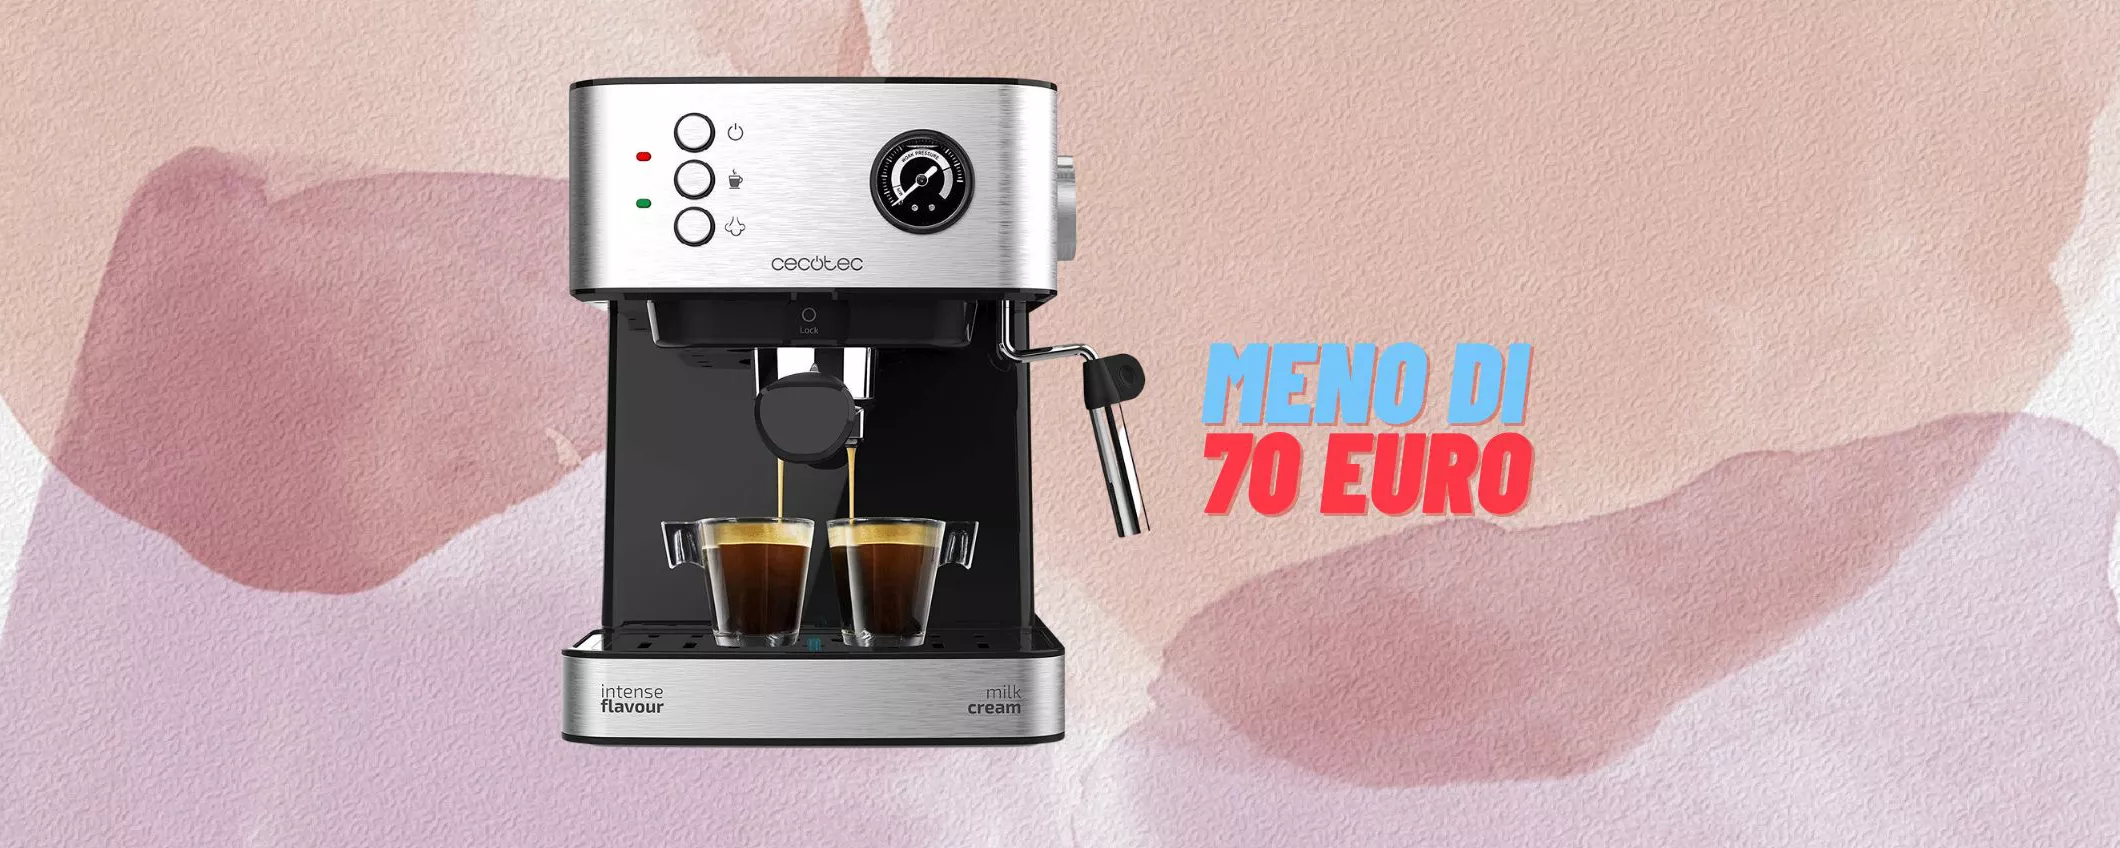 Cecotec Power Espresso 20 a € 69,90 (oggi)